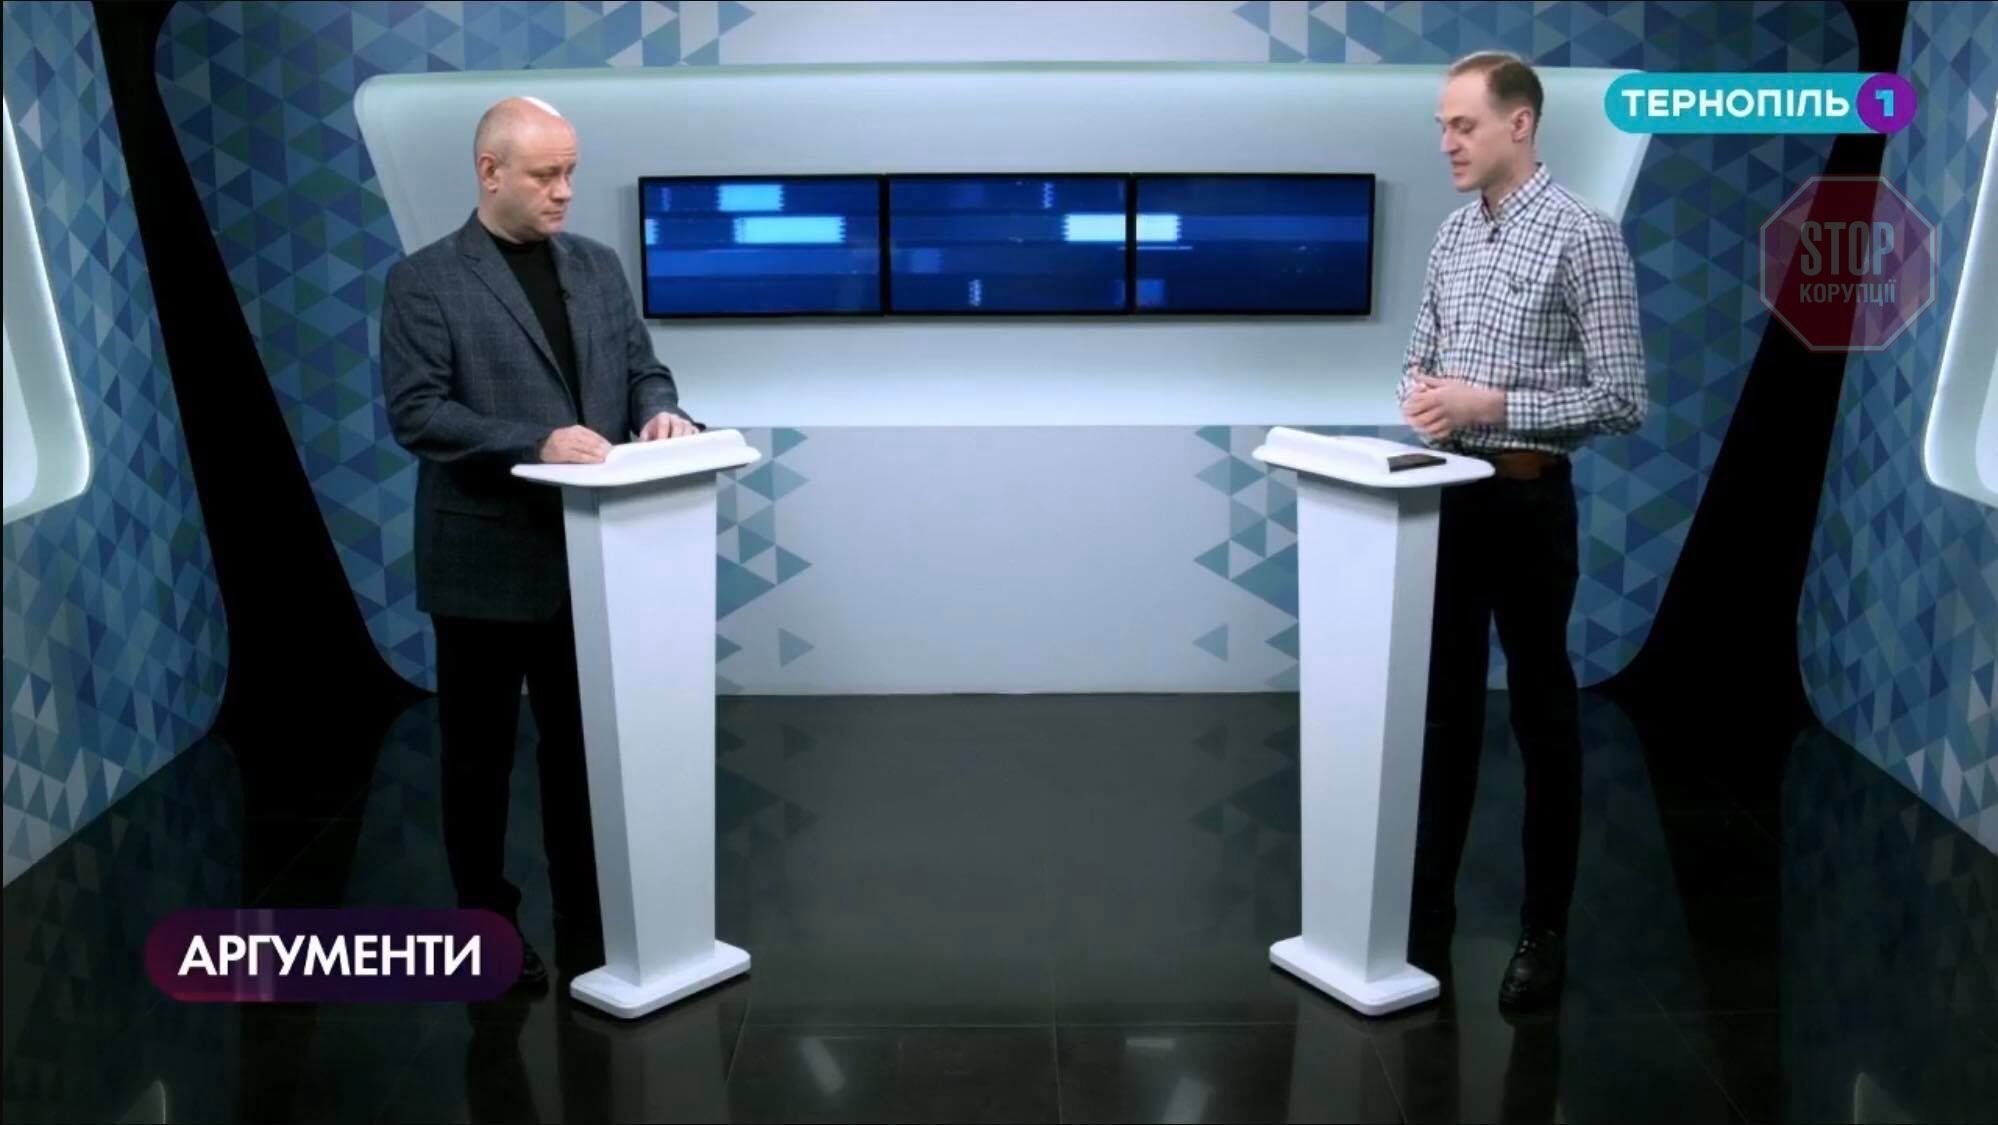  Гість програми ''Аргументи'' на телеканалі «Тернопіль-1» - Микола Сивирин. Скріншот: СтопКор